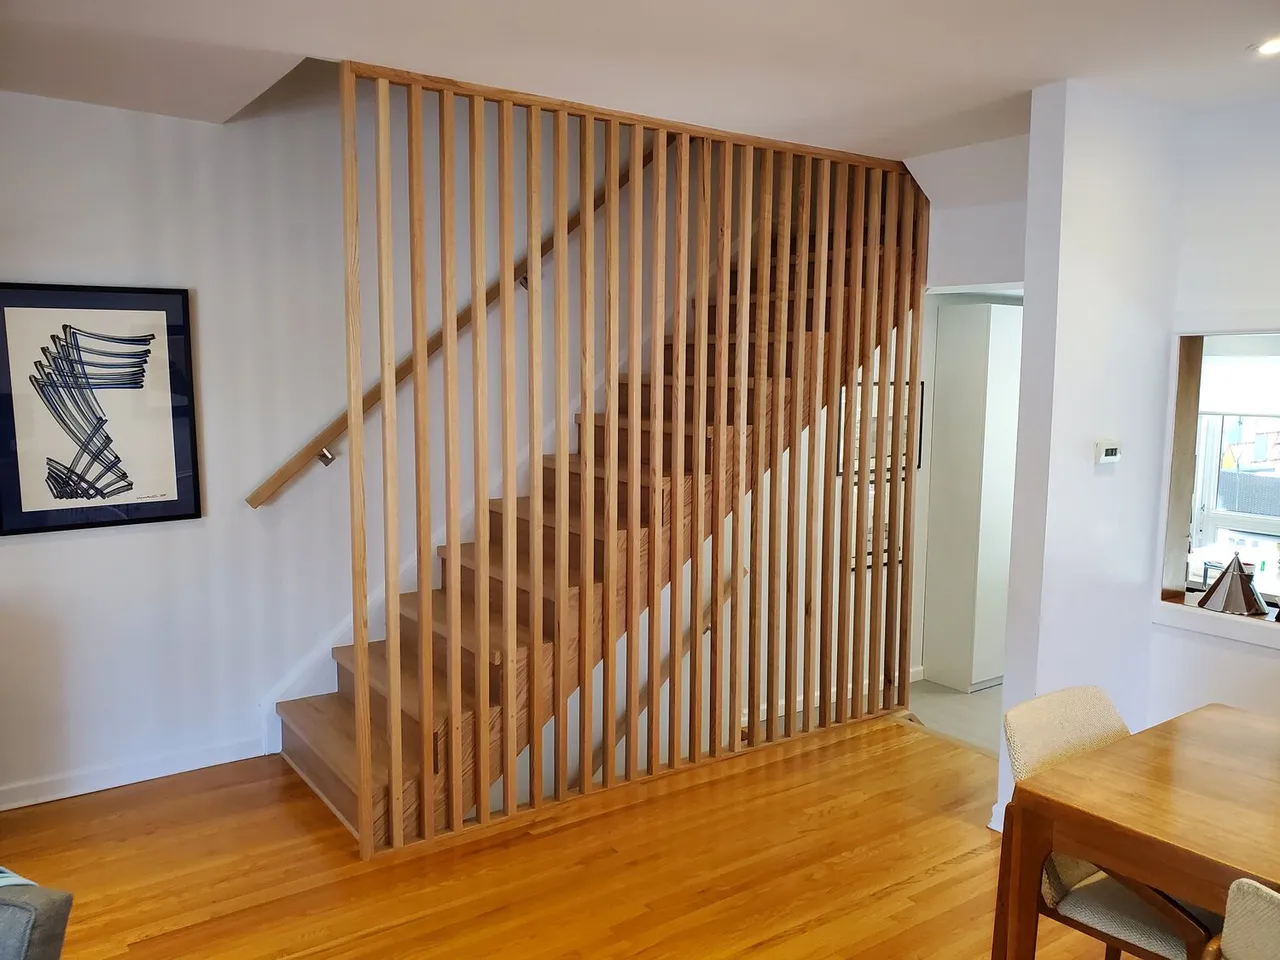 Vách ngăn cầu thang bằng gỗ với thiết kế tối giản